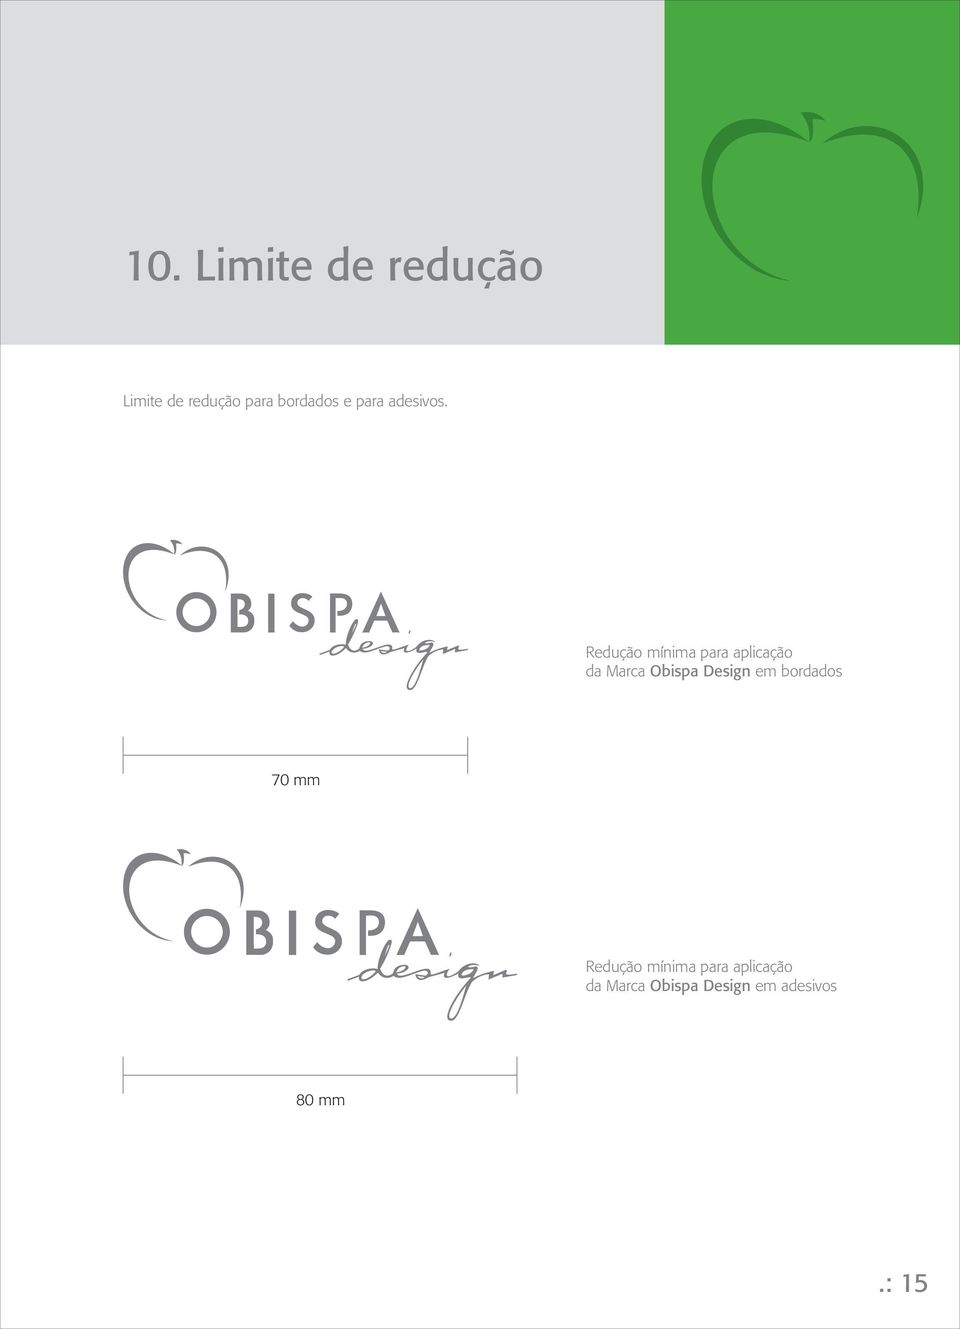 Redução mínima para aplicação da Marca Obispa Design